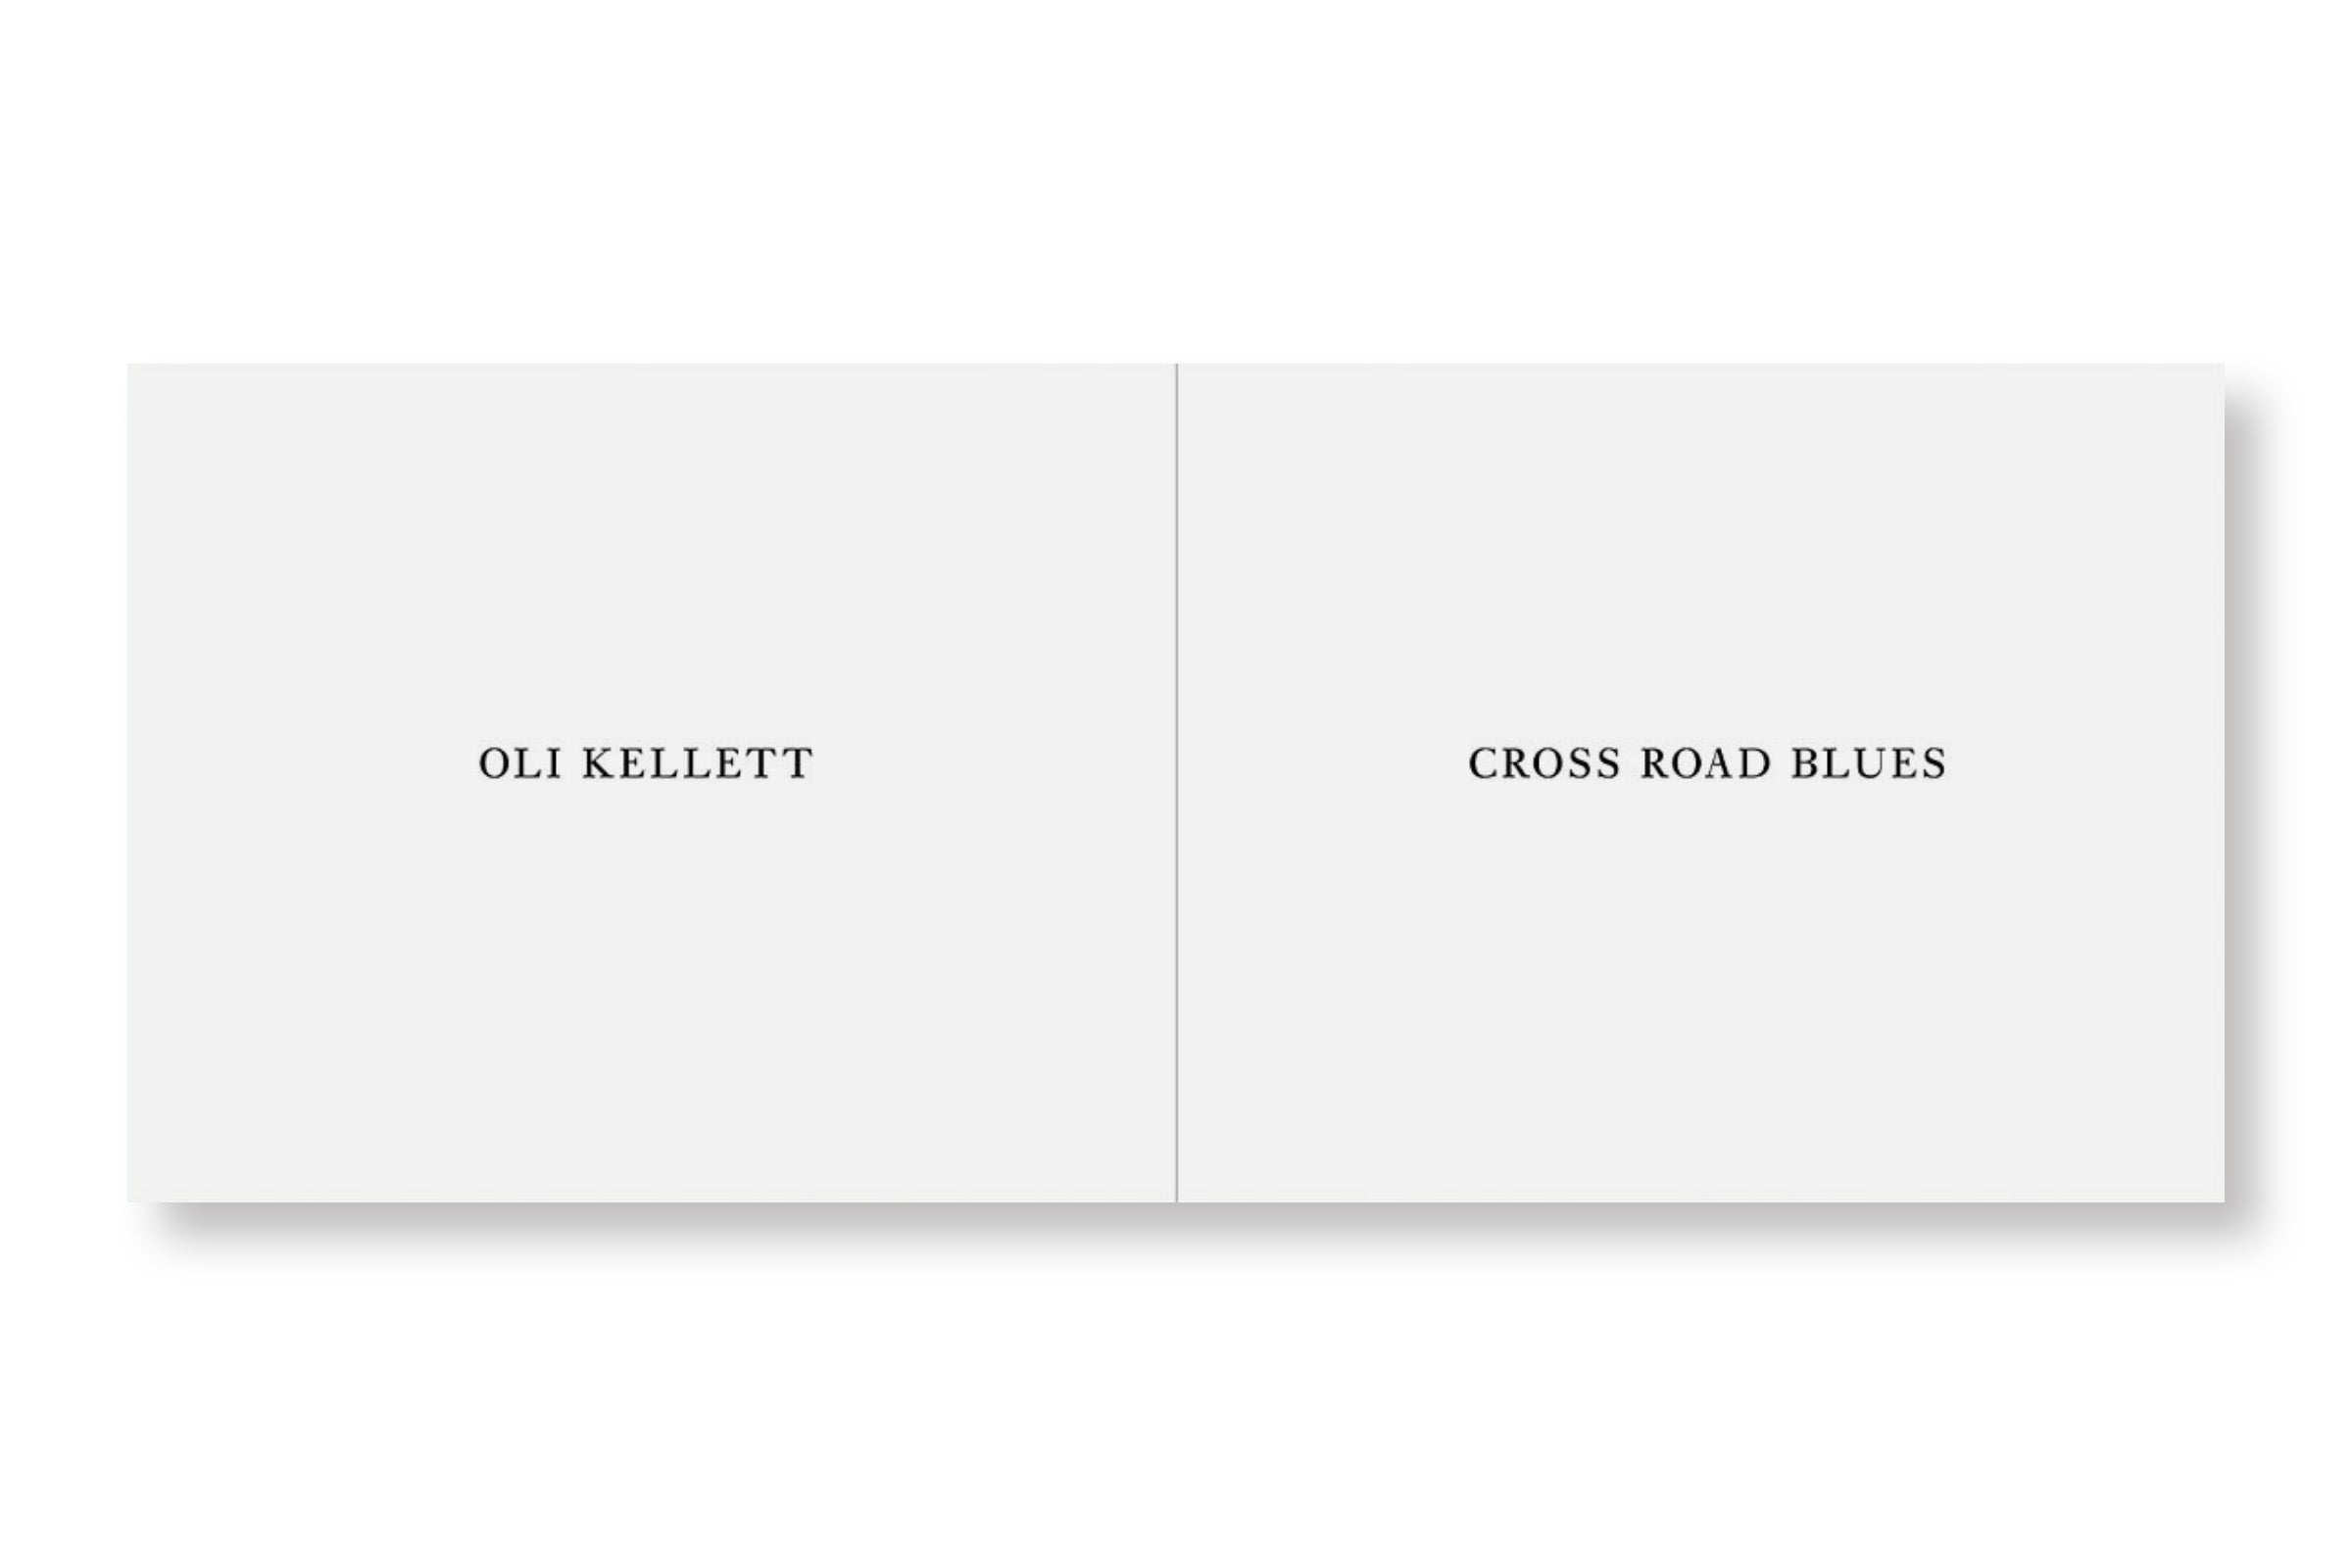 CROSS ROAD BLUES by Oli Kellett